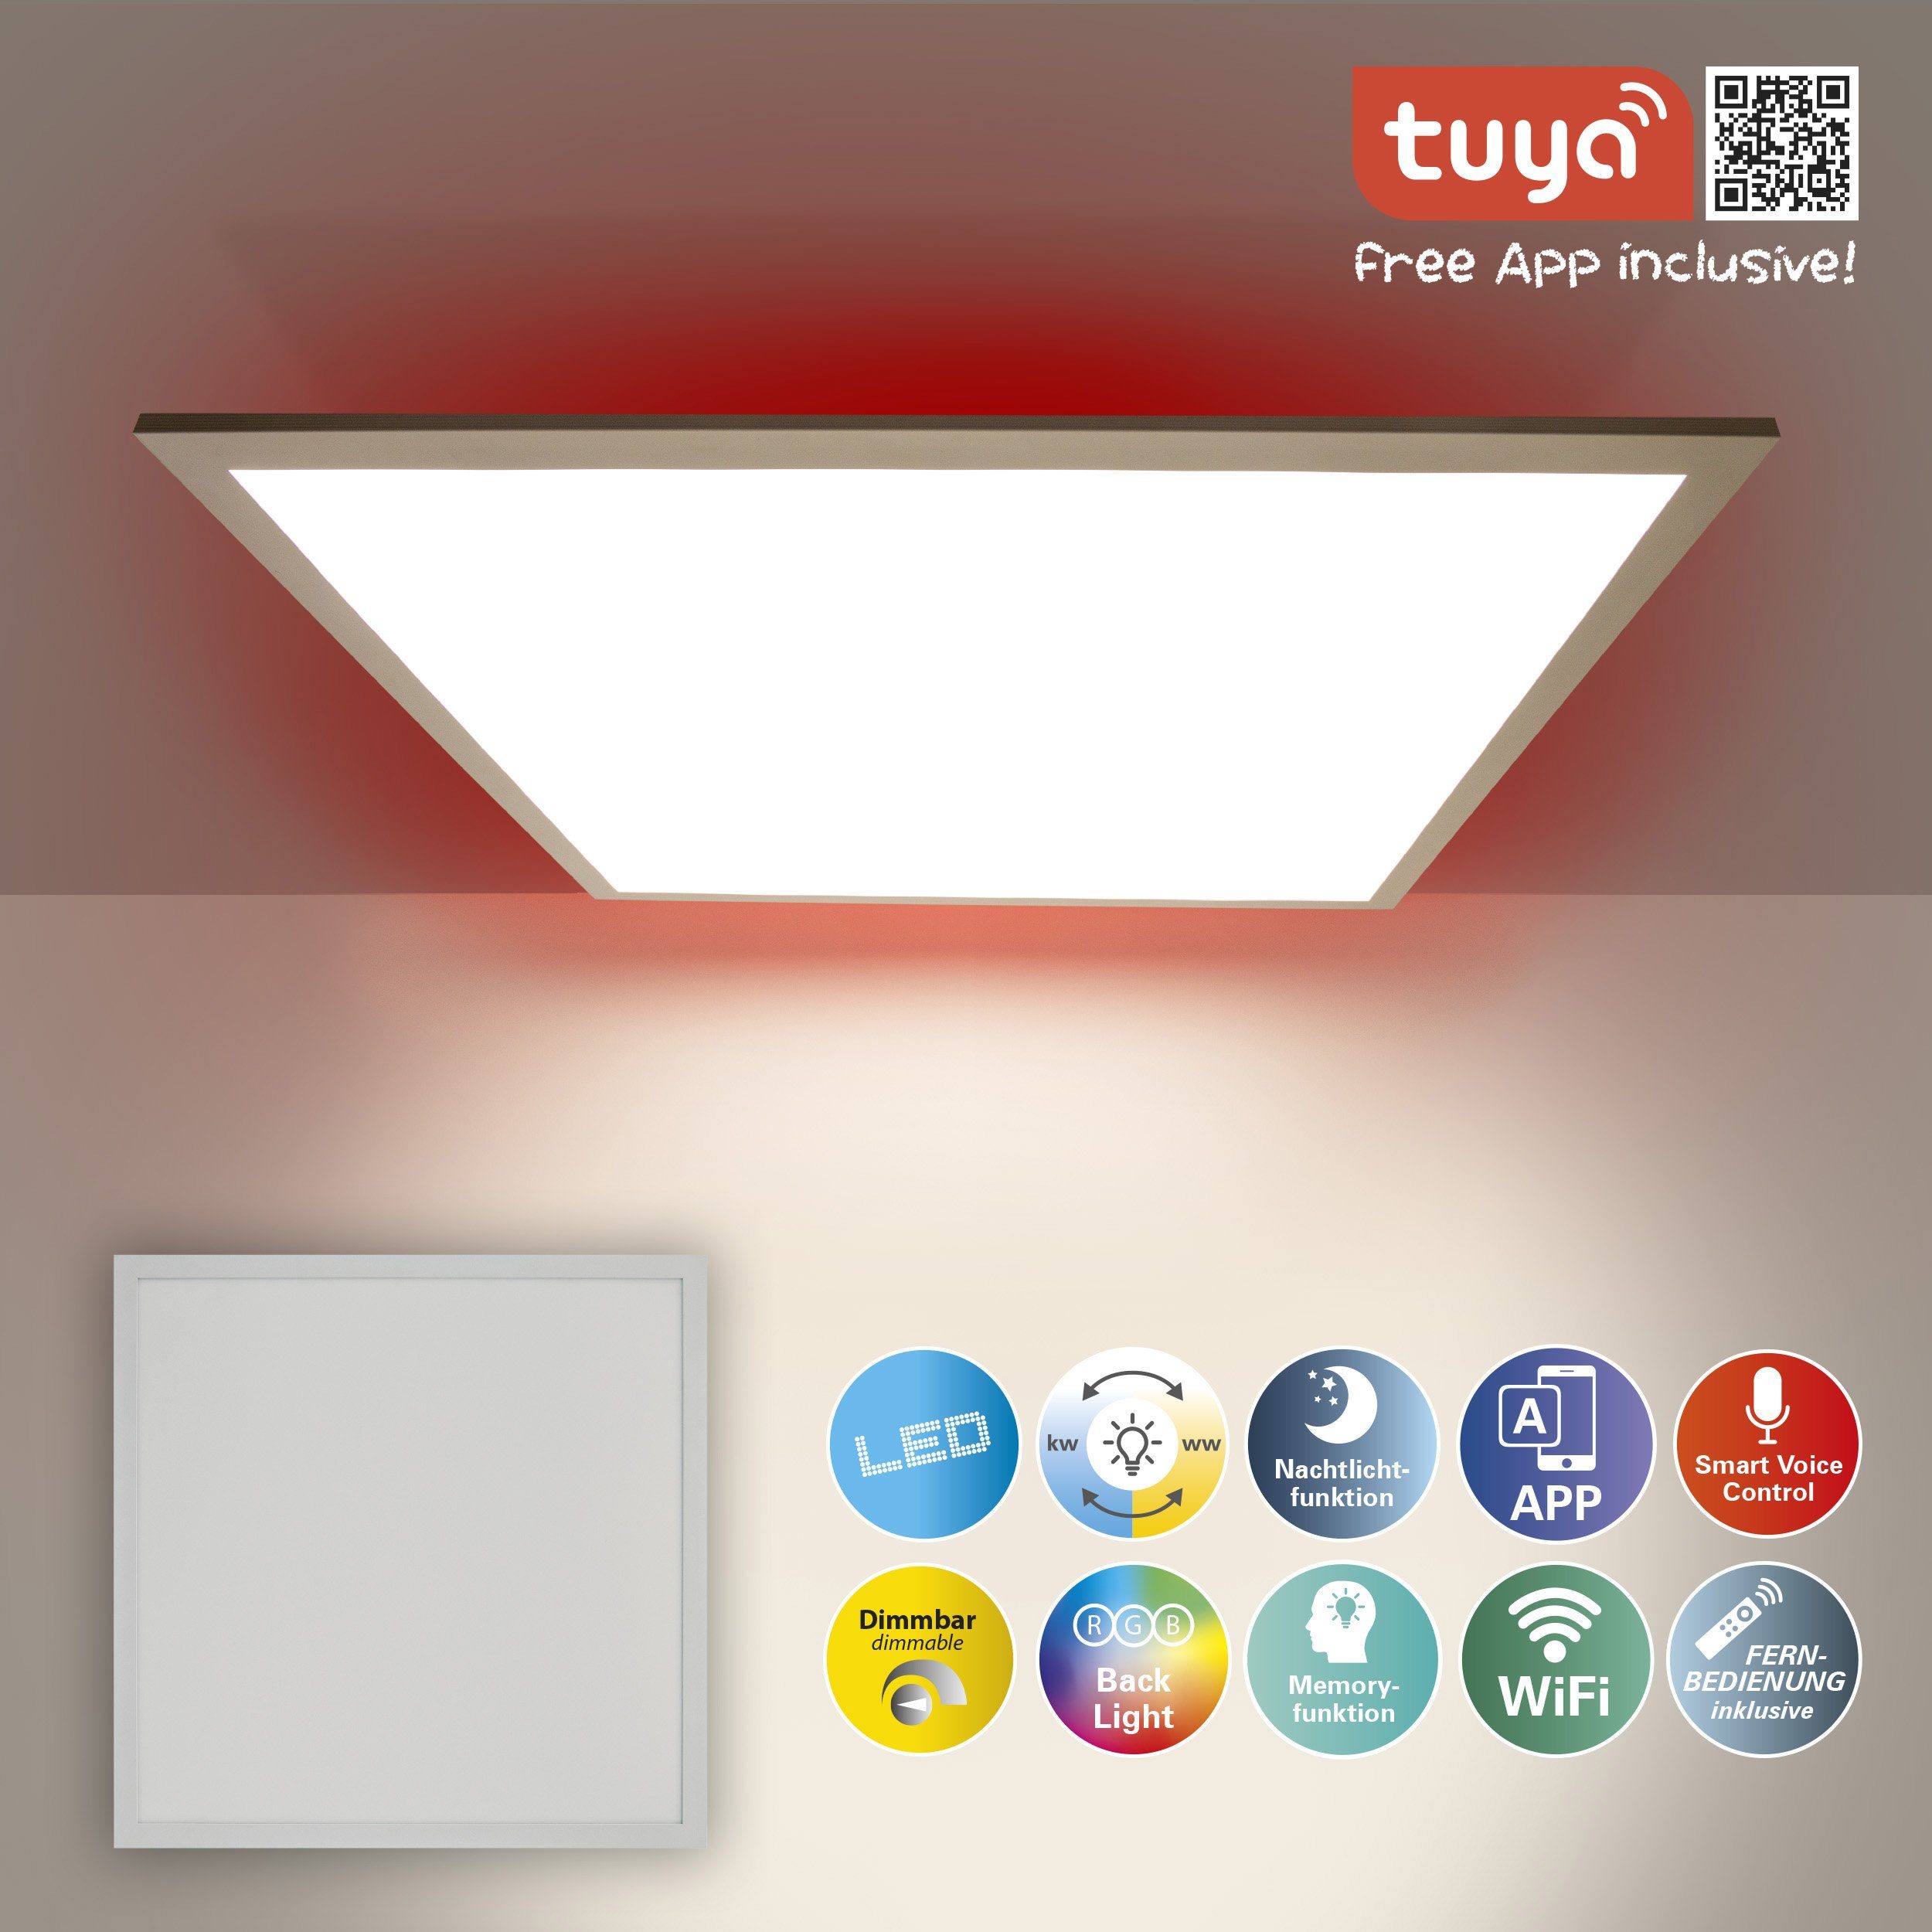 RGB-Stripe; LED-Leuchte CCT; LED LED Hintergrund: Panel, Nachtlicht-/Memoryfunktion; Smarte Farbwechsler, App; Backlight Home Smart Panel Fernb., fest Memoryfunktion, integriert, LED Backlight näve